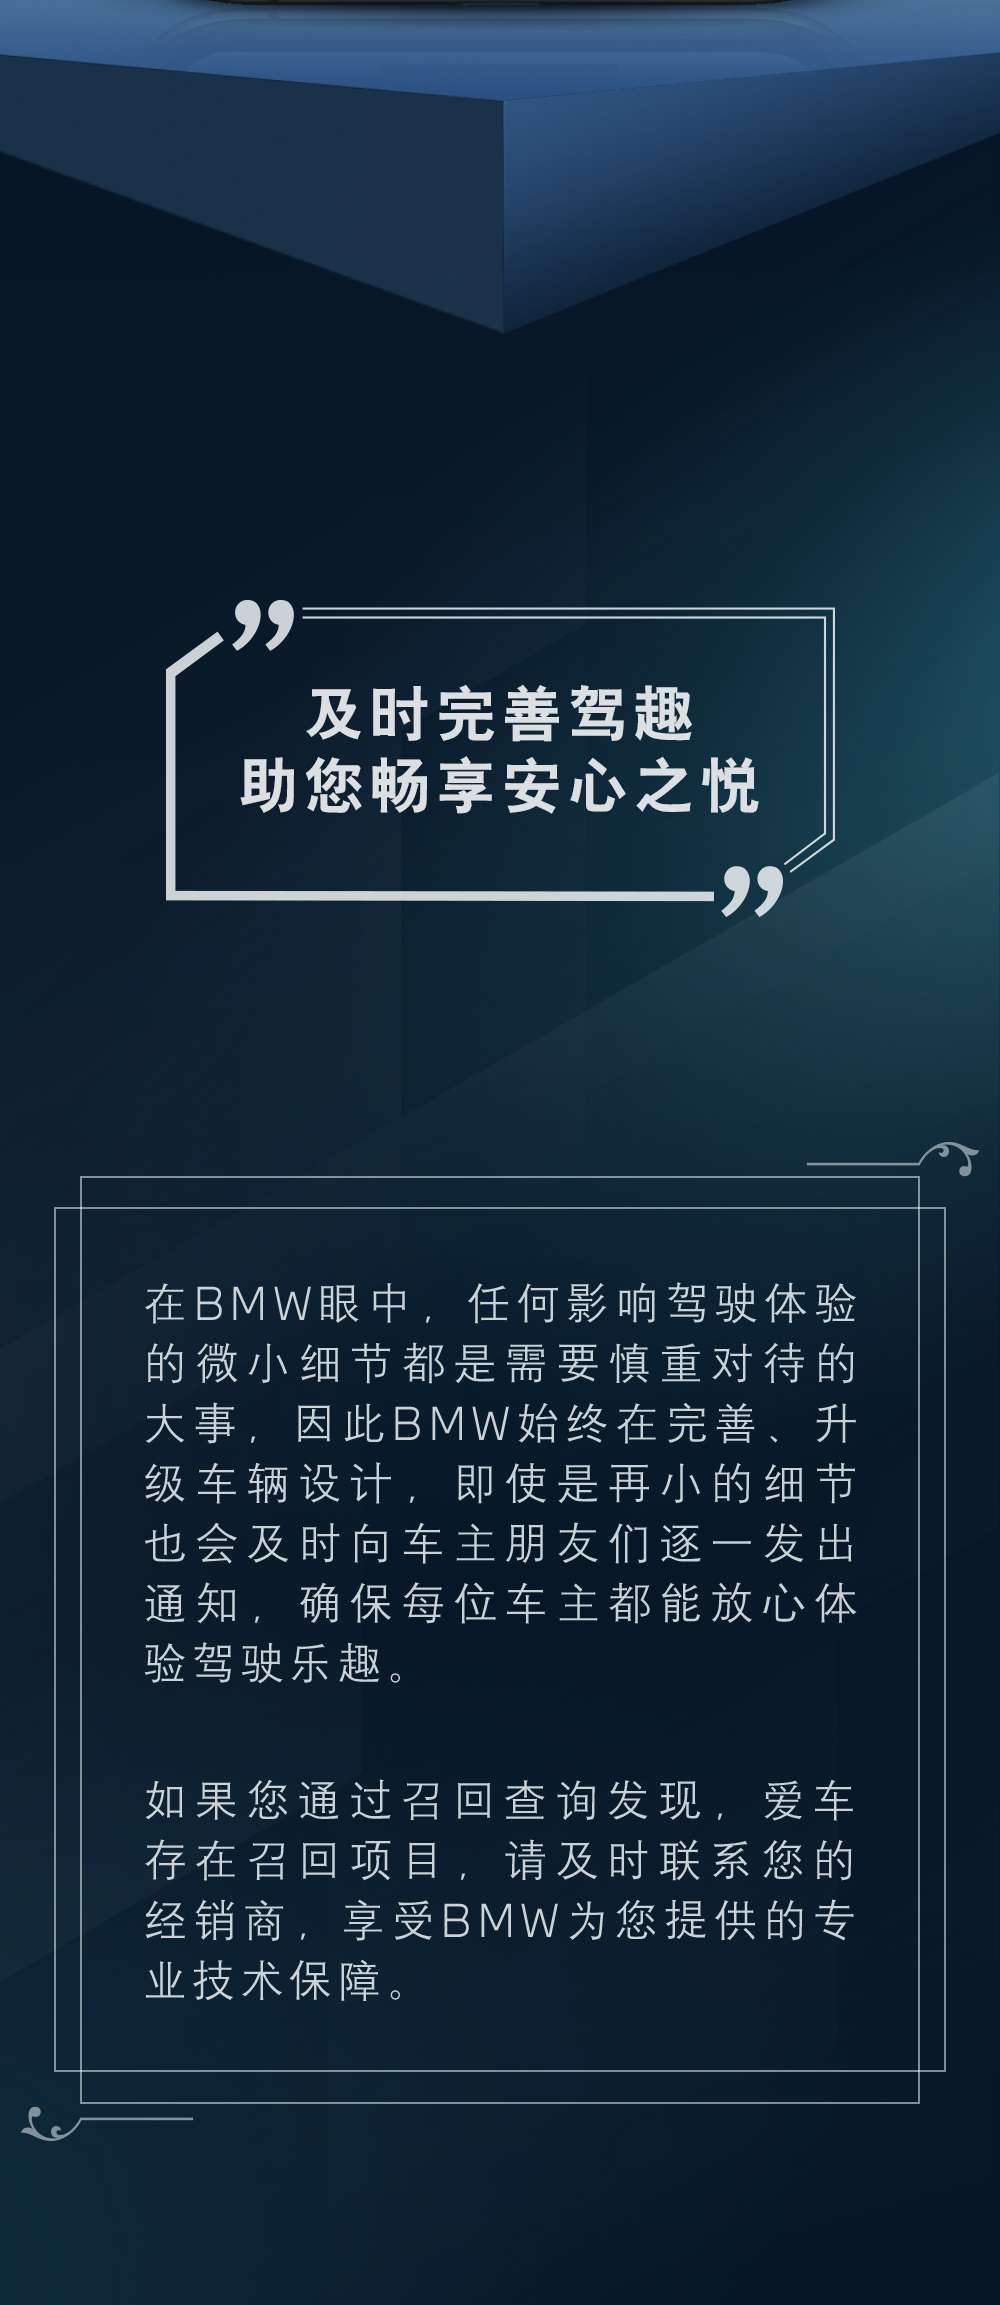 BMW产品召回状态查询功能，让您轻松享受驾驶之悦